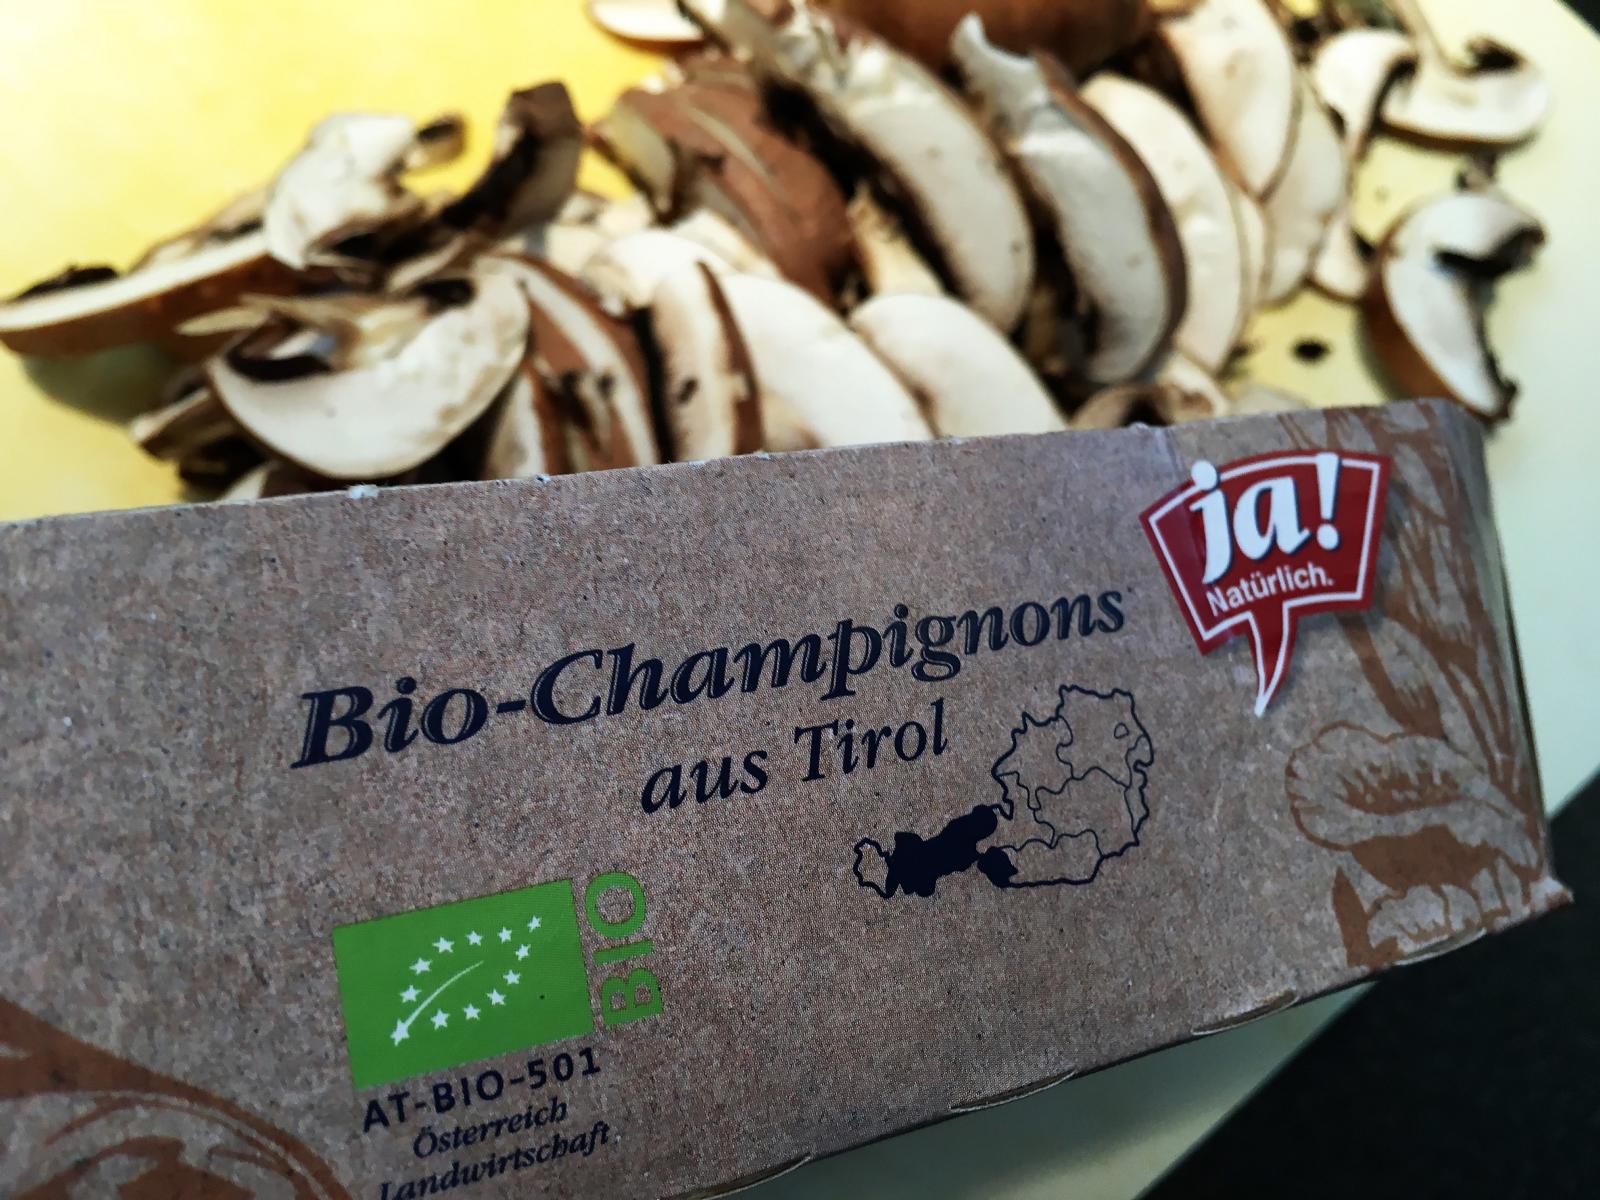 Sowas kann man doch nicht wegwerfen lassen - Bio-Ware aus Tirol wurde vorm Entsorgen bewahrt